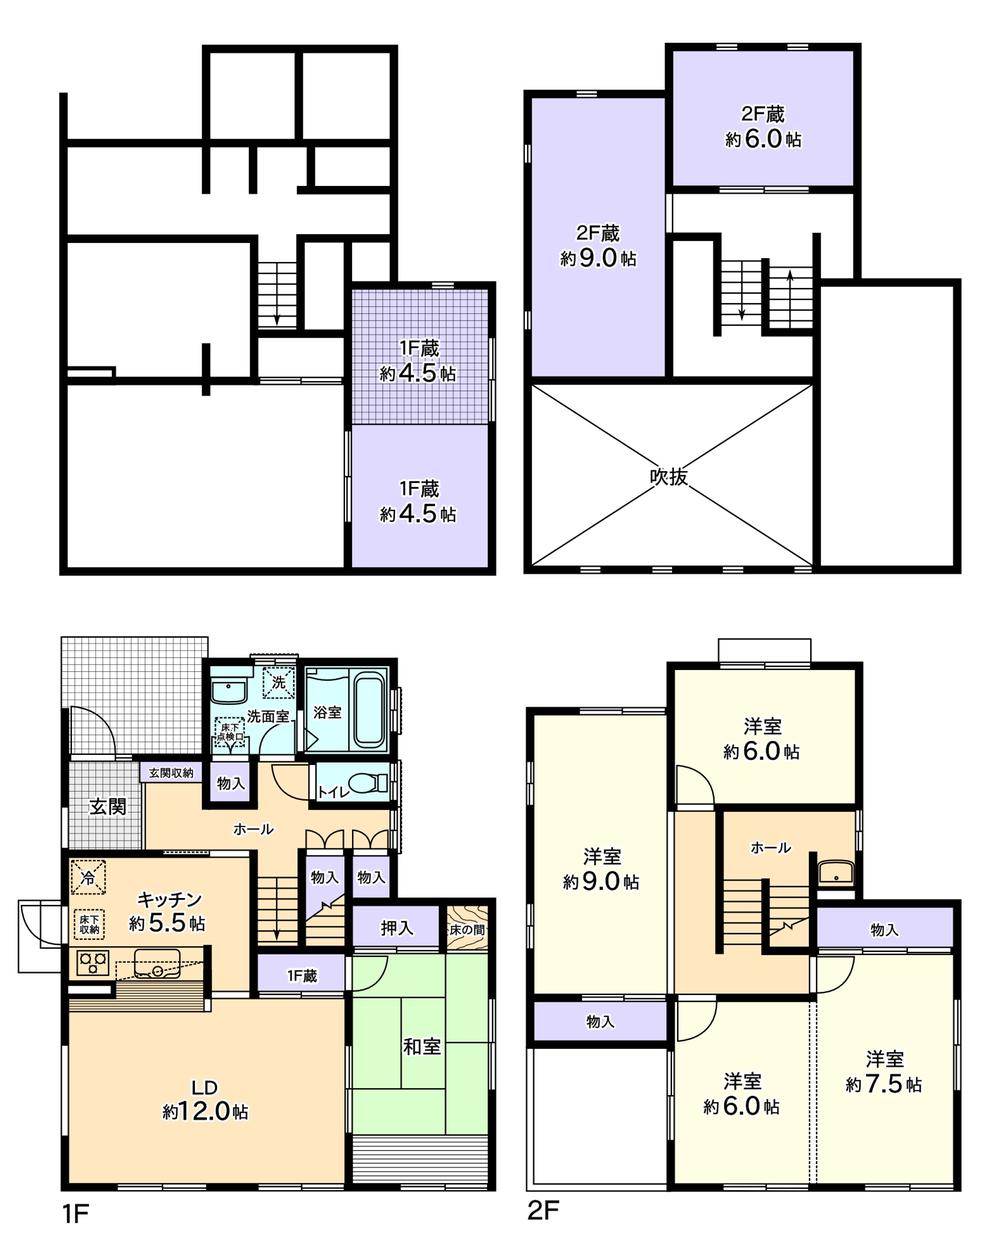 Floor plan. 32,800,000 yen, 4LDK + 3S (storeroom), Land area 250.83 sq m , Building area 130 sq m